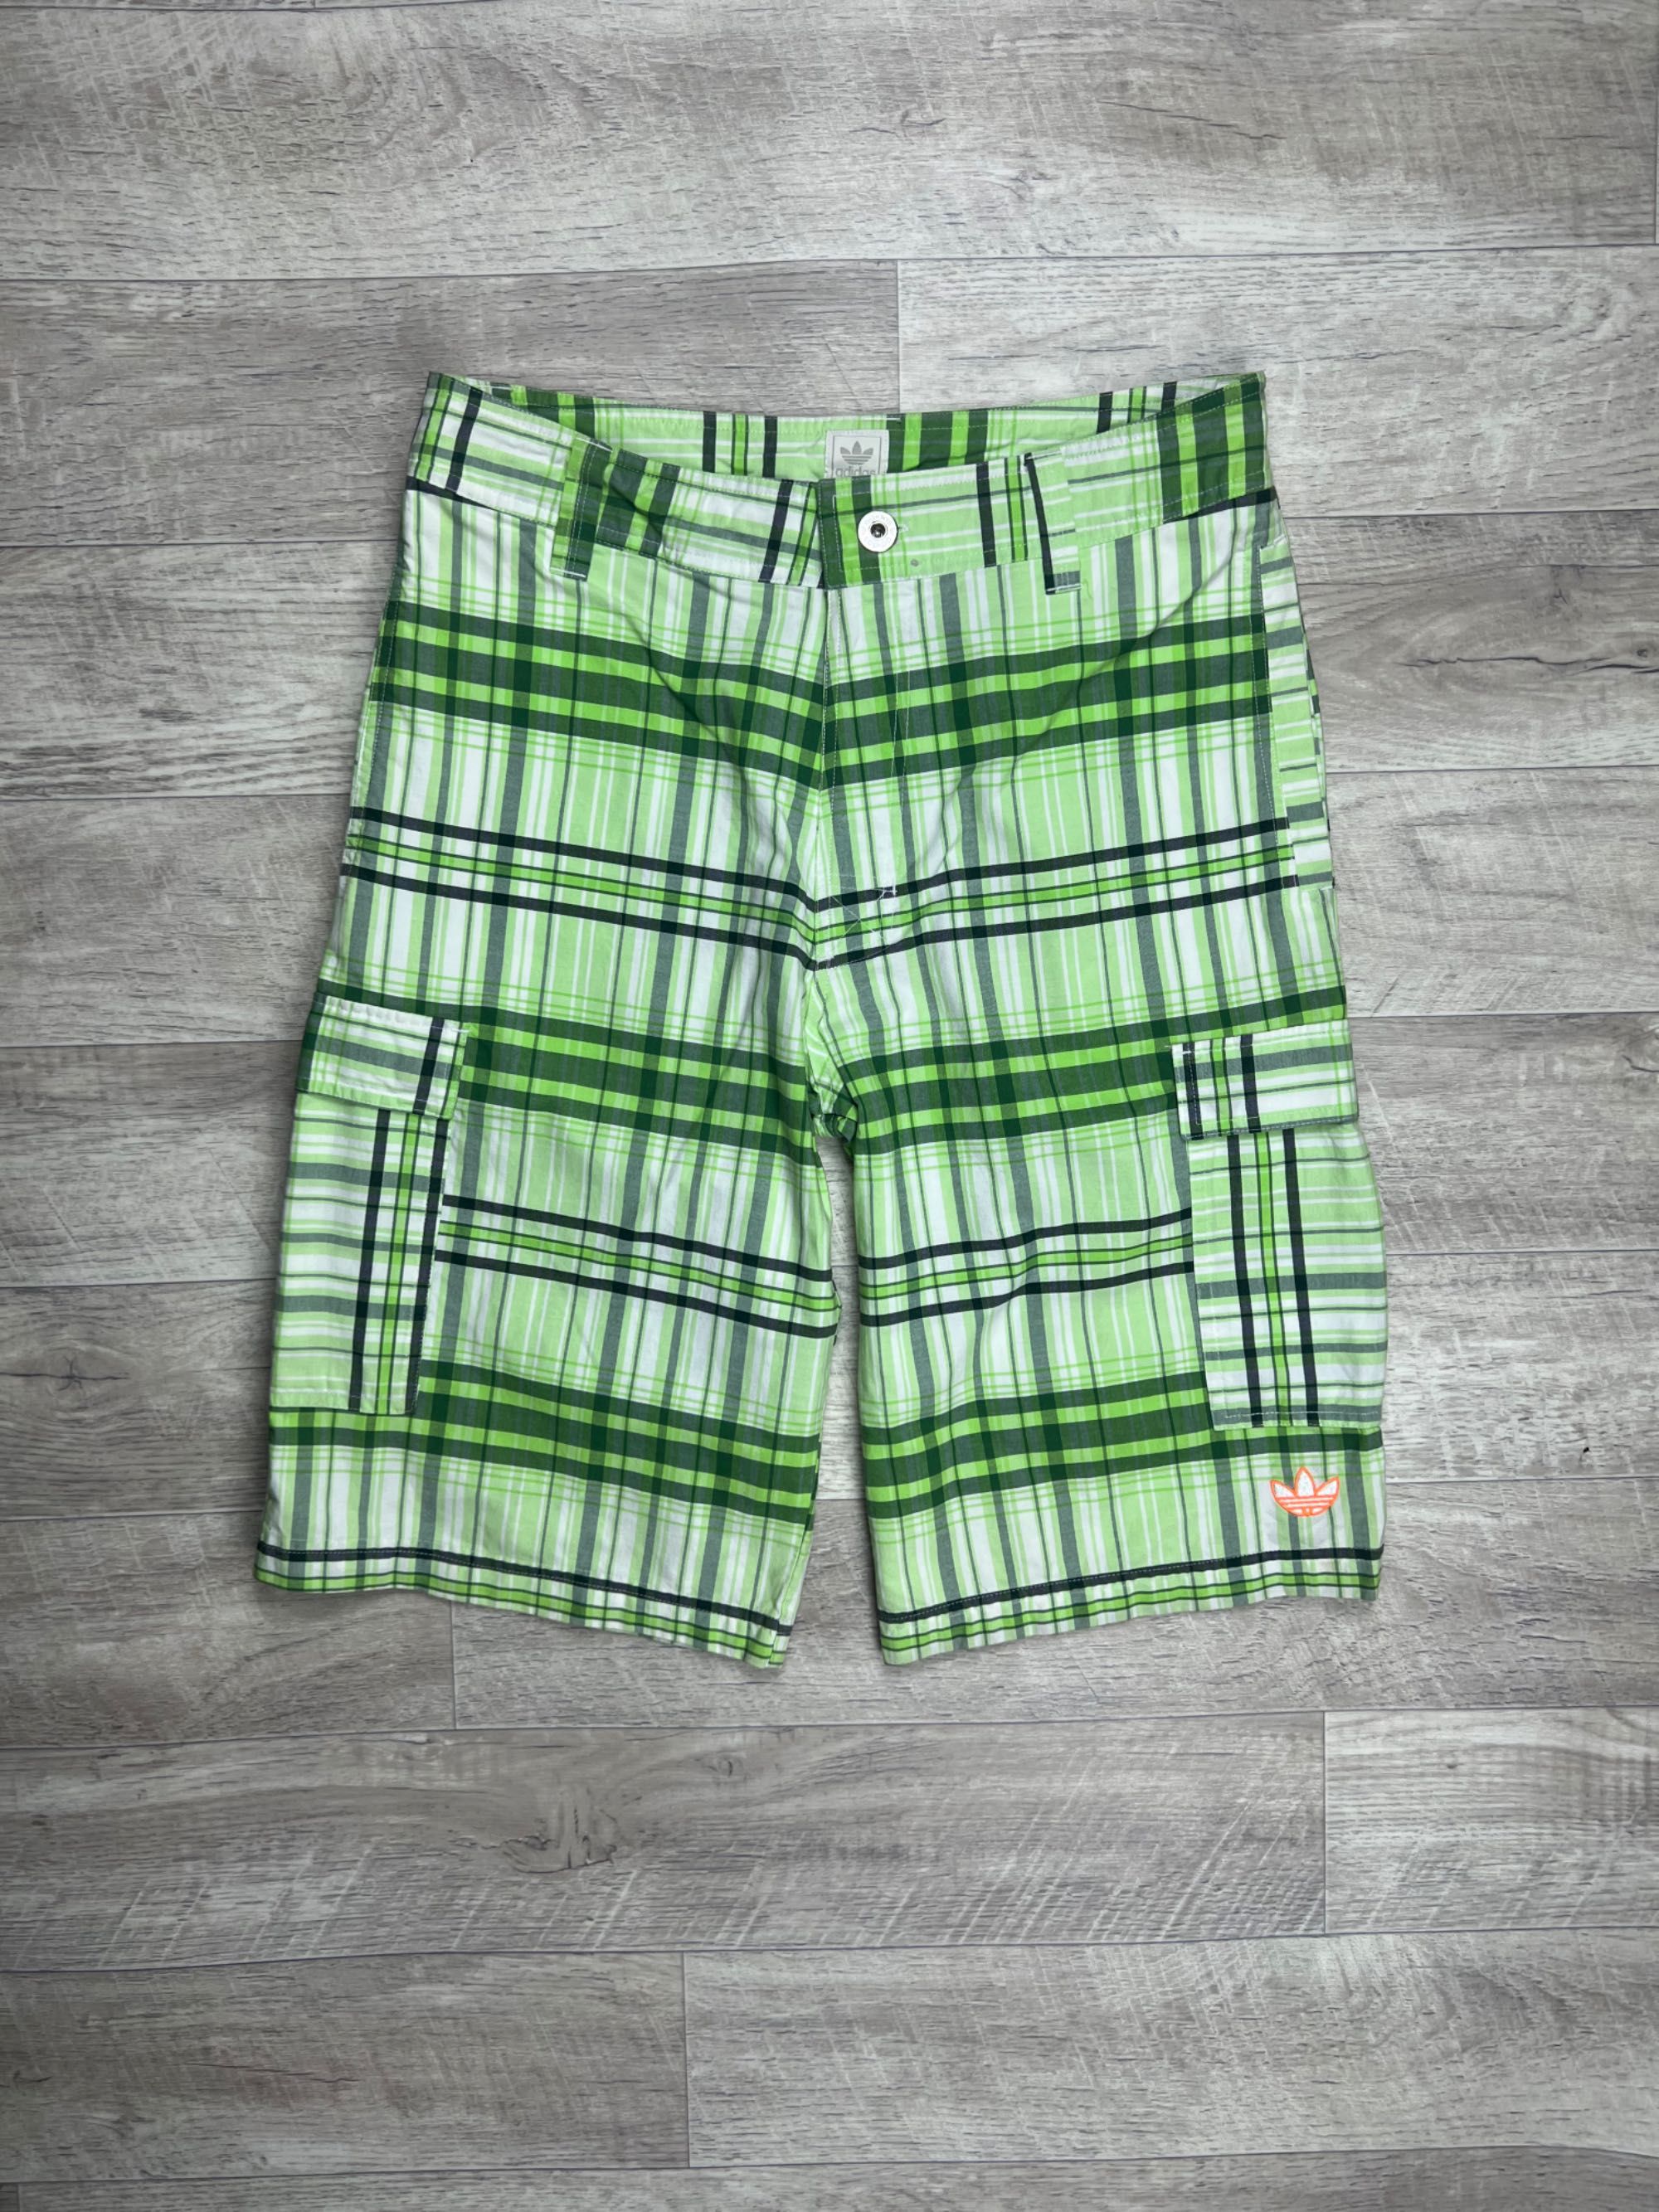 Adidas loose fit шорты M размер 32 с этикеткой клетчатые зеленые